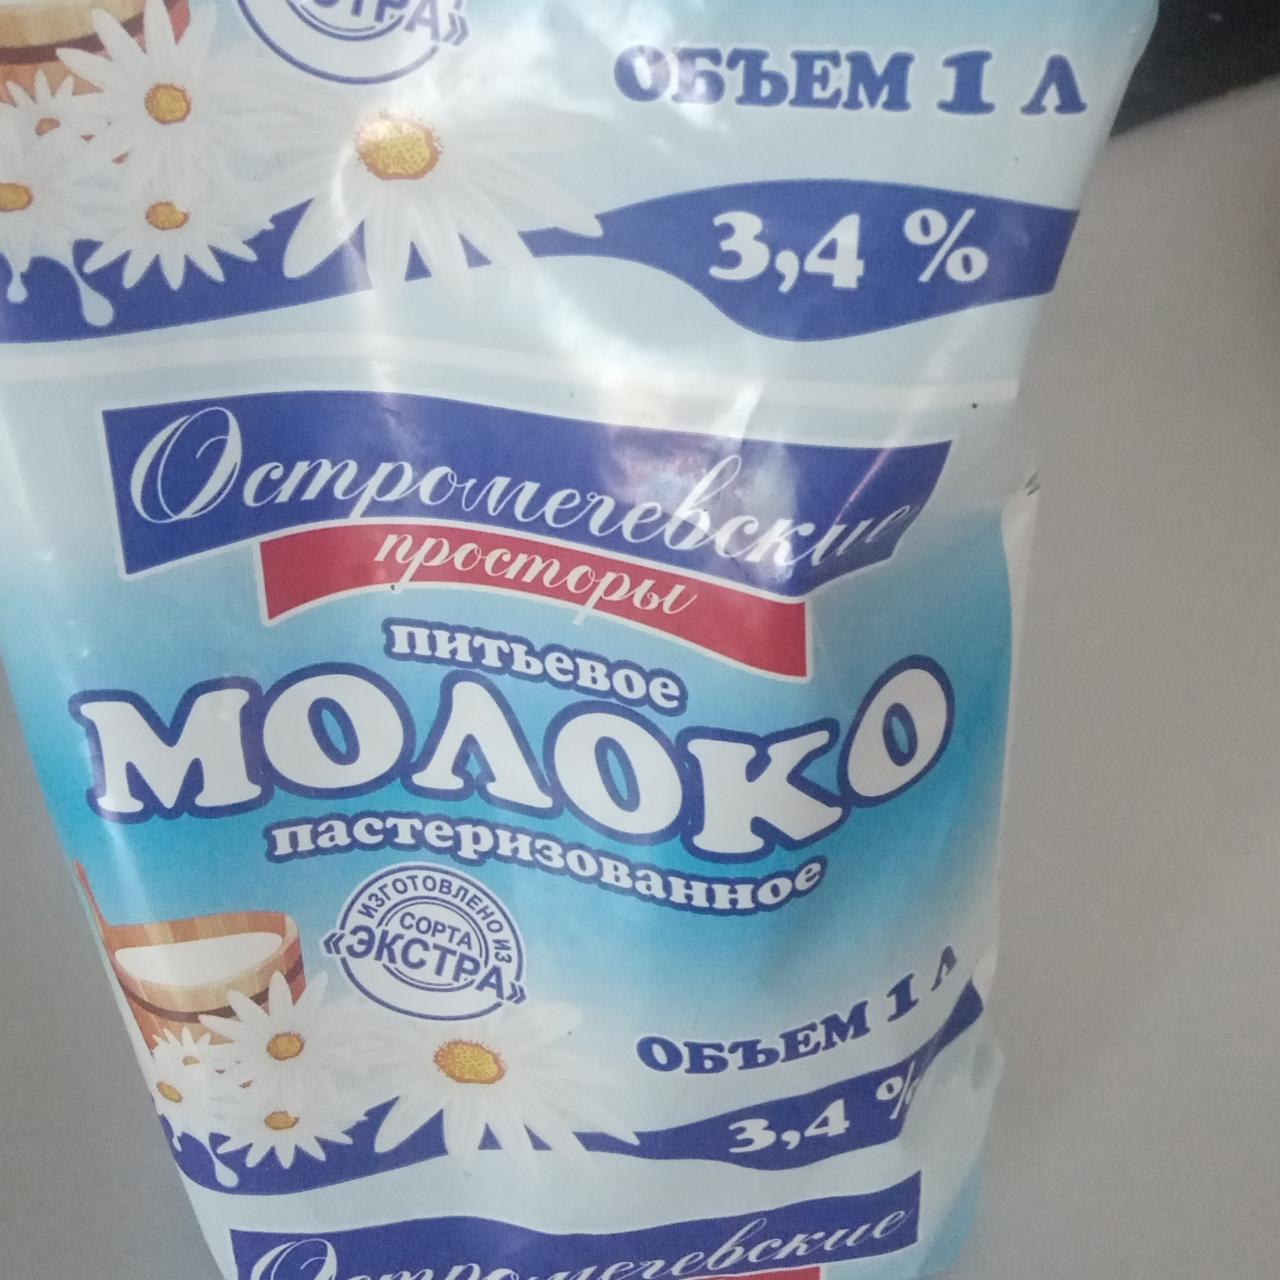 Фото - Молоко 3.4% Остромечевские просторы